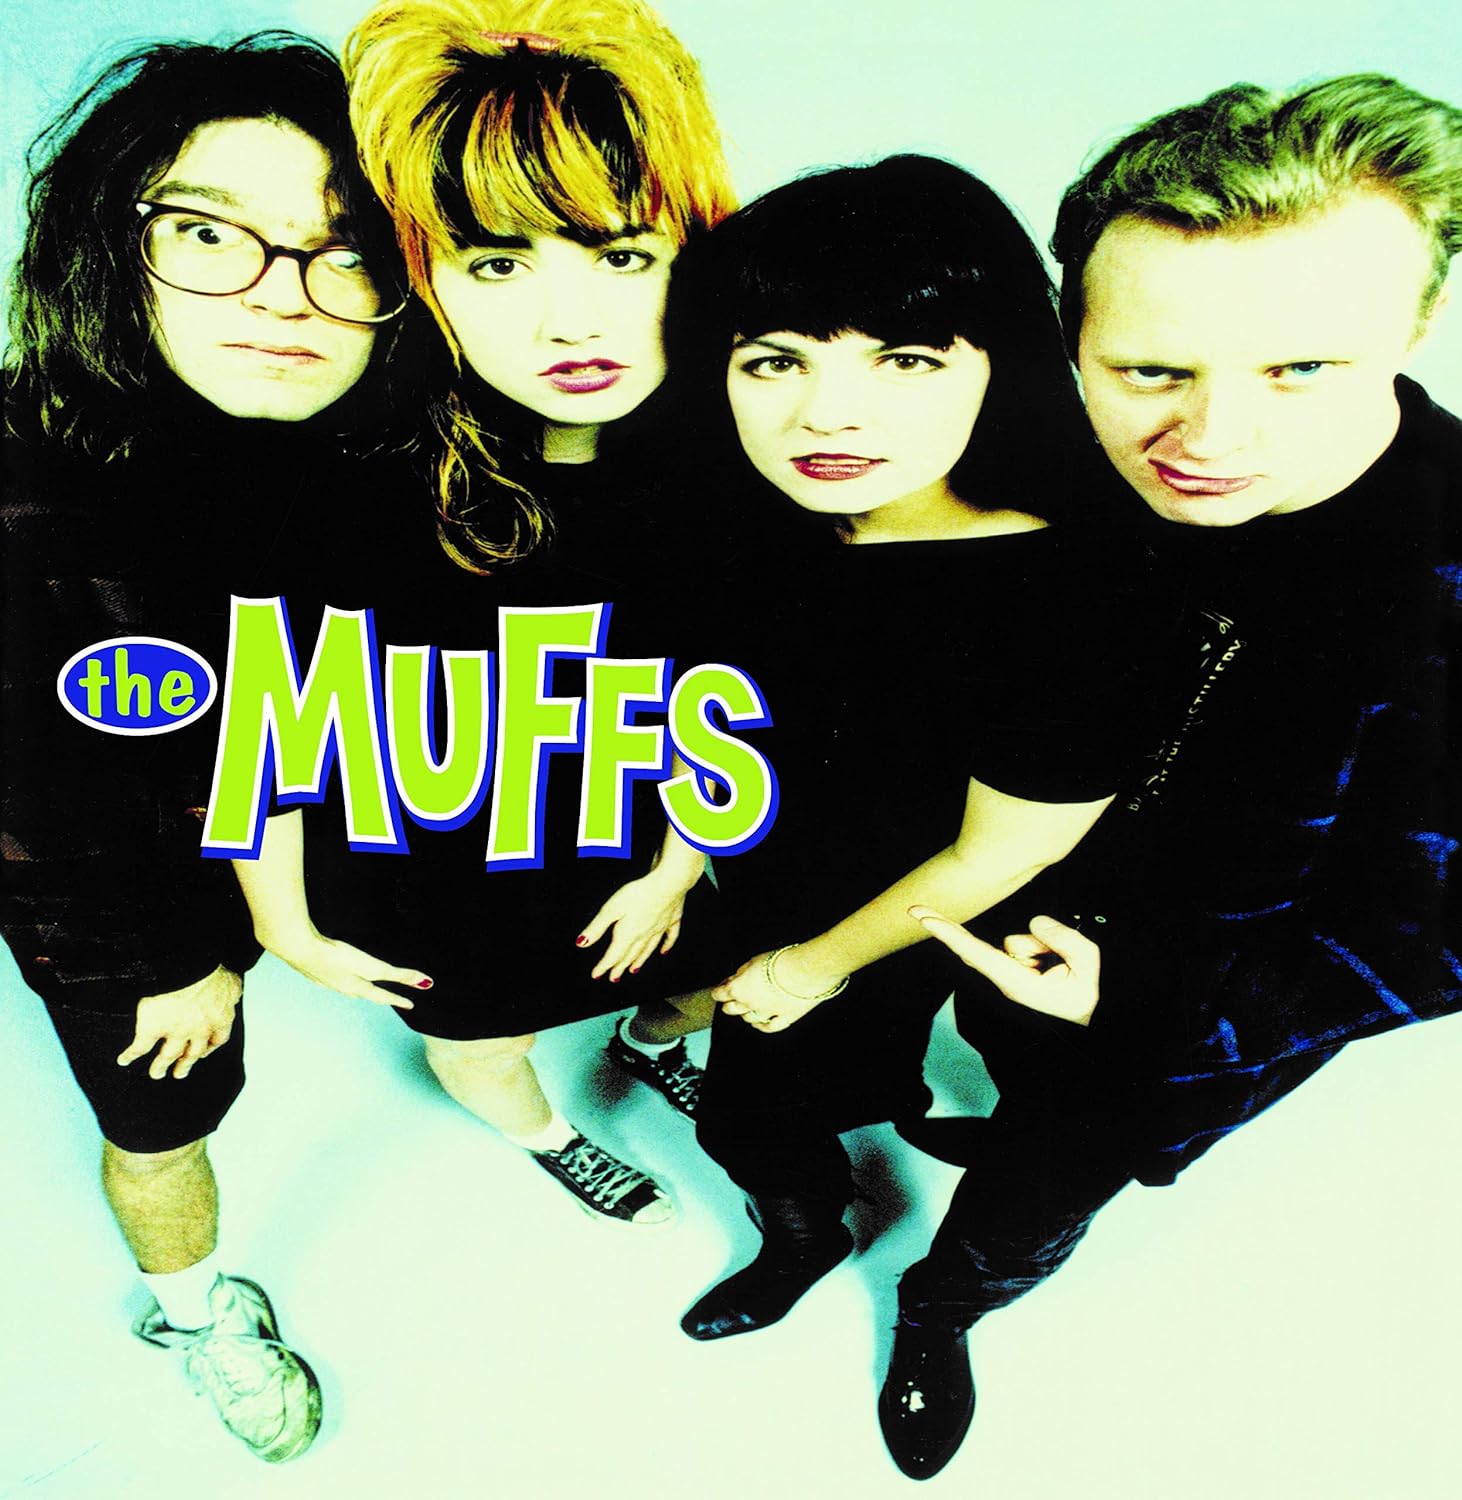 MUFFS, THE – The Muffs